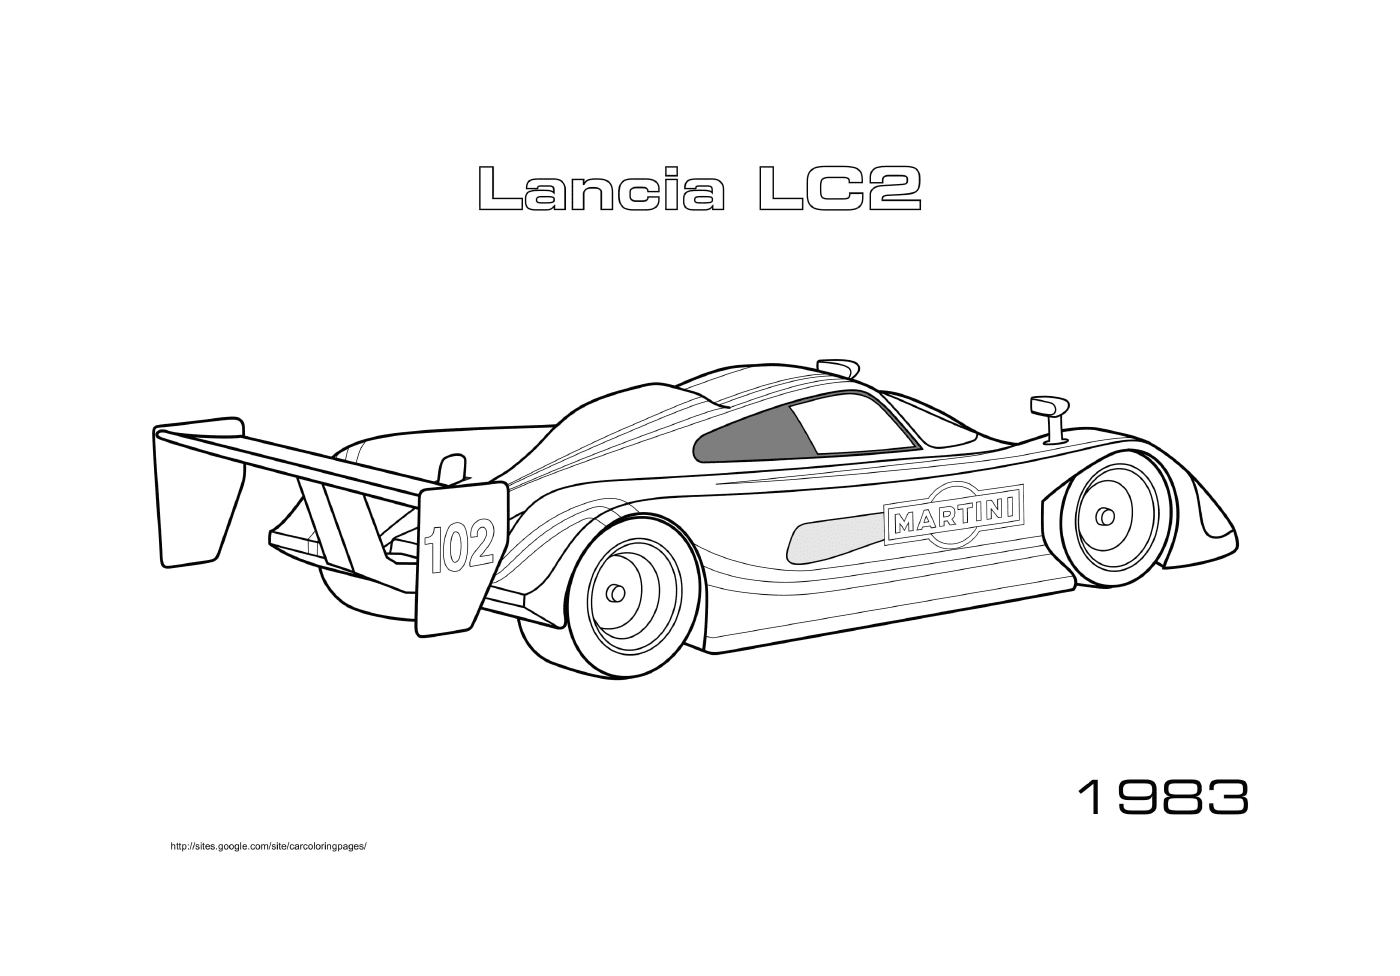  Lancia Lc2 von 1983 